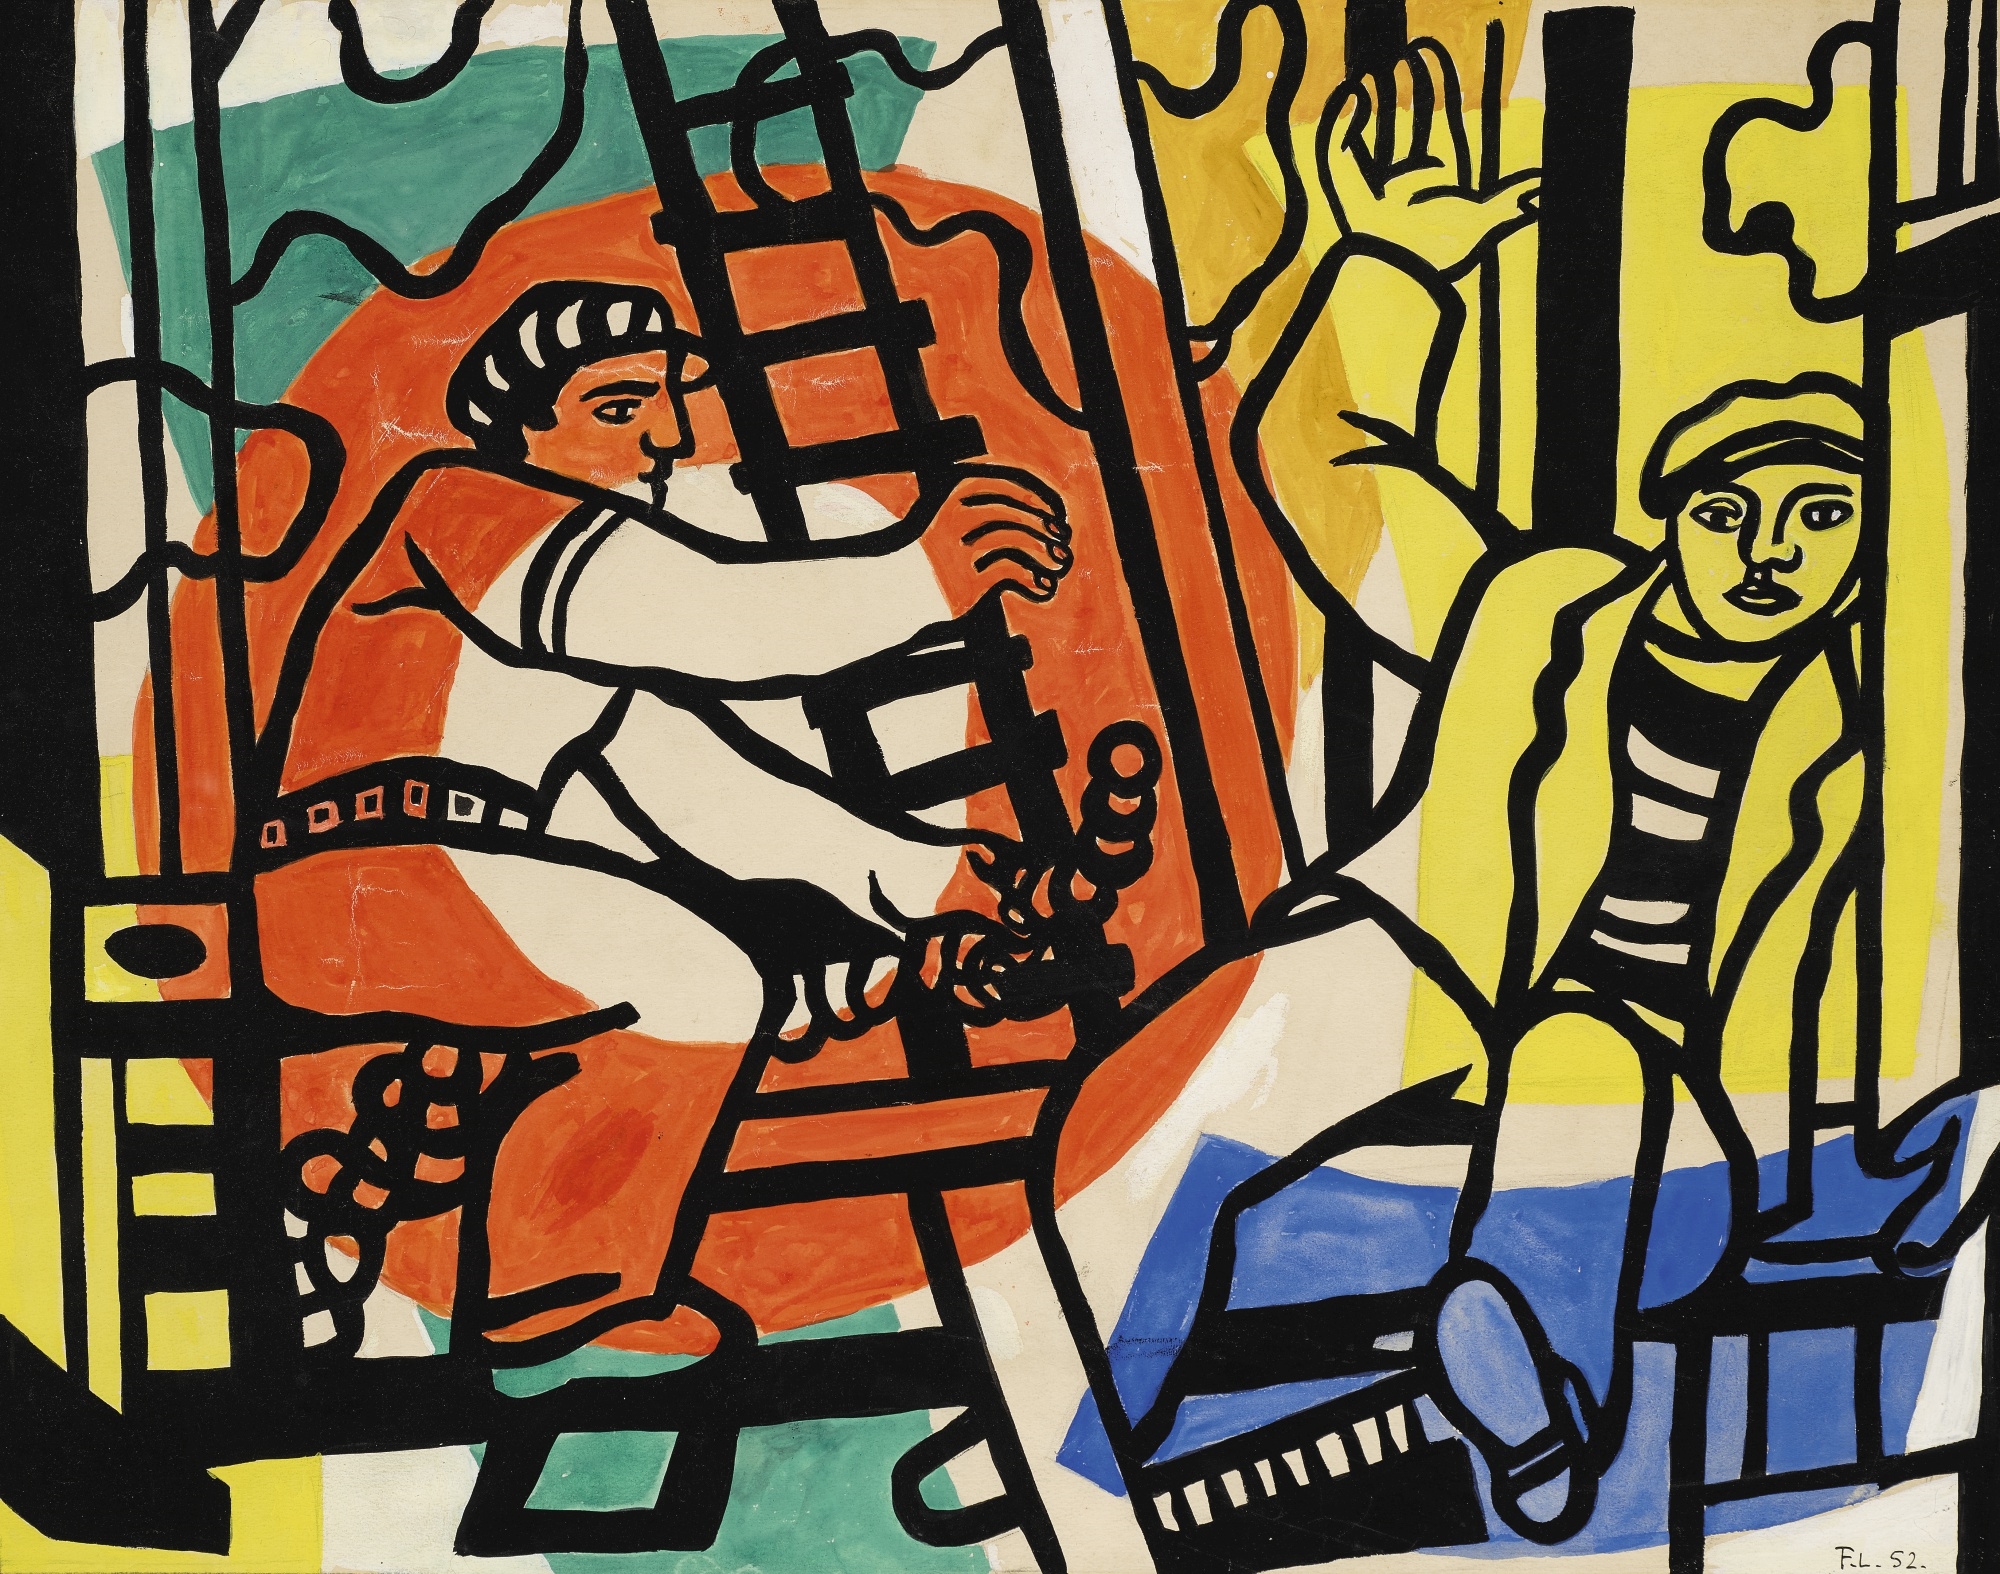 Étude pour "Les Constructeurs" by Fernand Léger, 1952